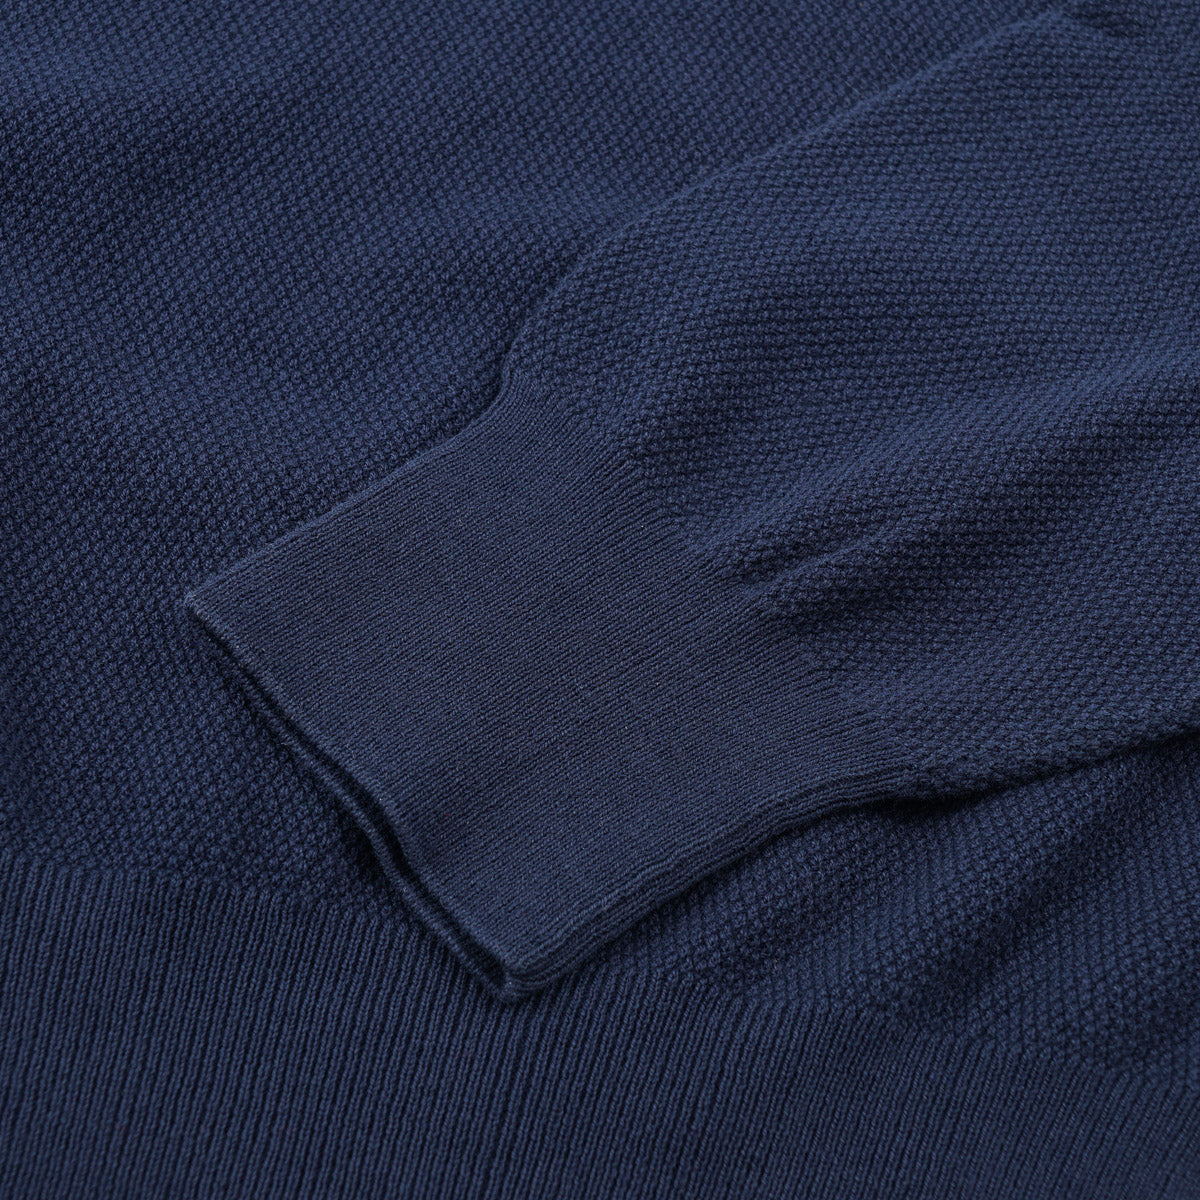 Boglioli Knit Lightweight Cotton Sweater - Top Shelf Apparel